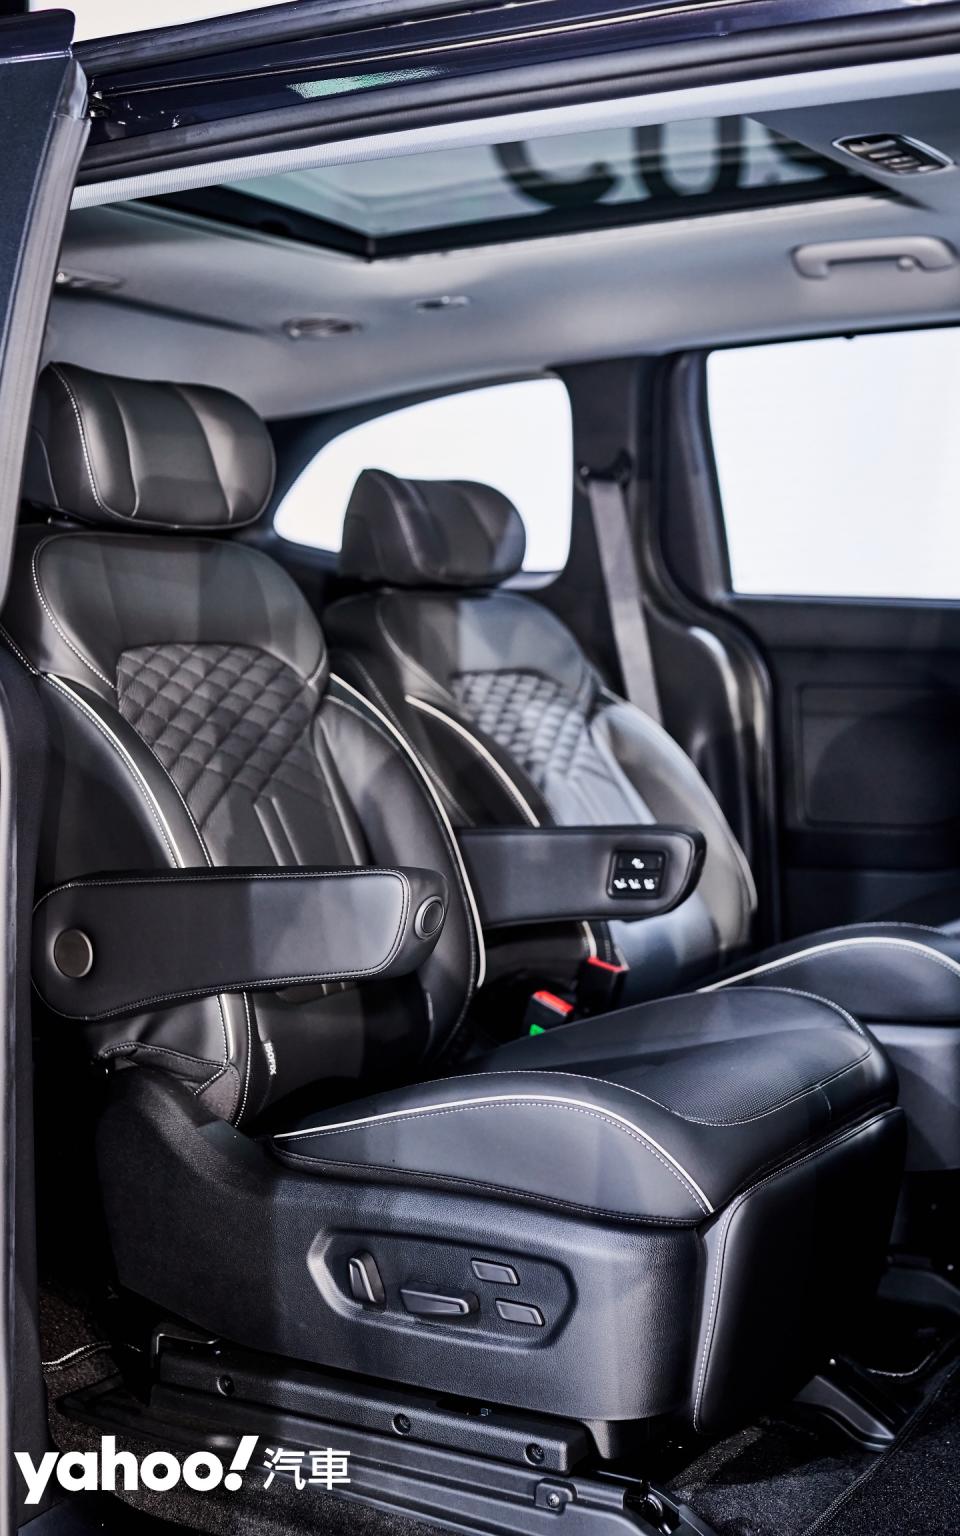 第二排兩張獨立座椅的設置在GLT-B VIP車型的配置上更特化了舒適需求。